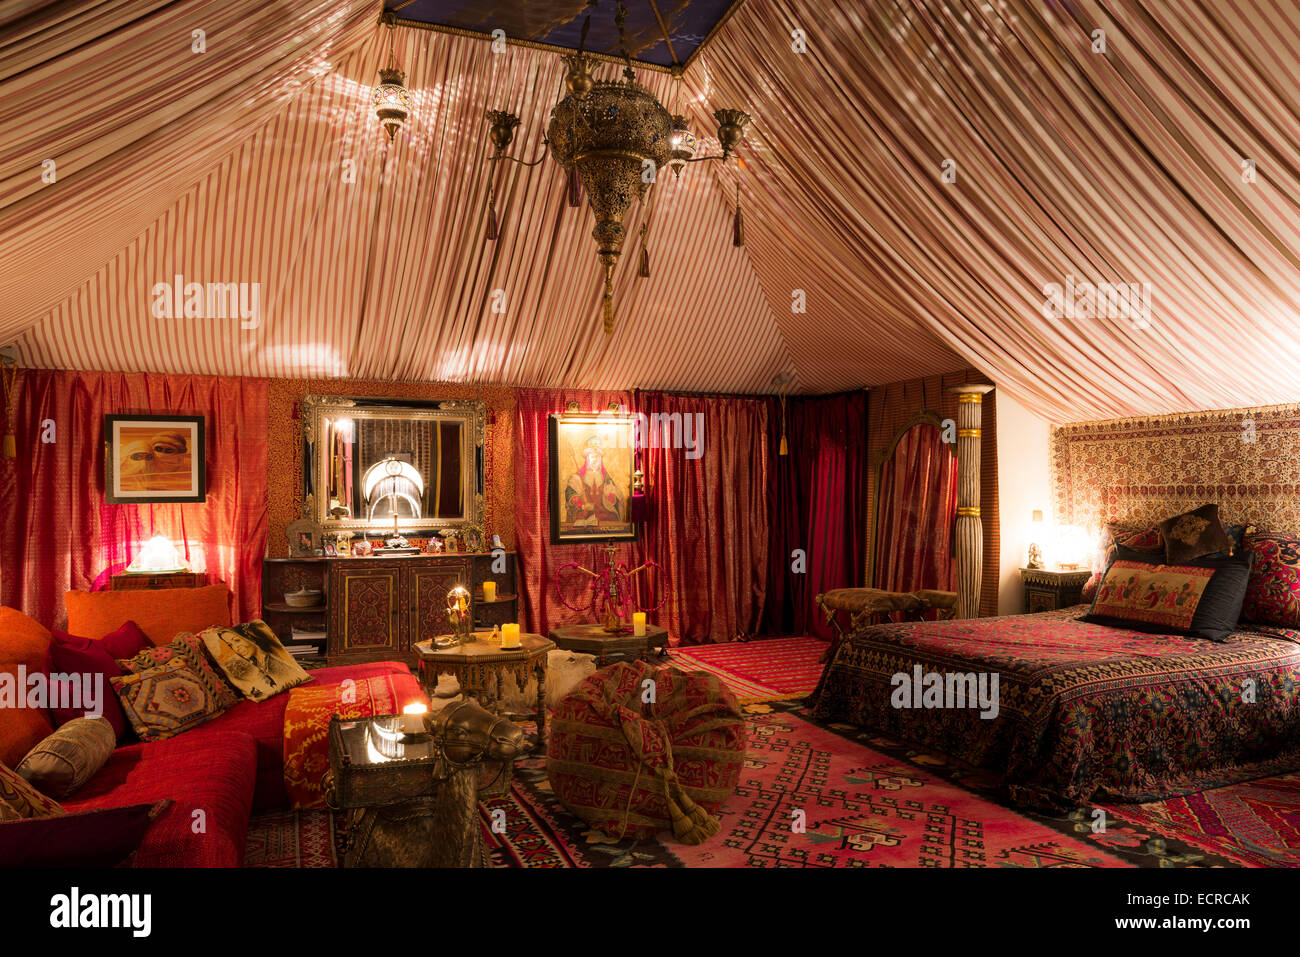 Chambre avec boudoir de style tente tapis marocain, tissus orientaux et tables d'appoint hexagonale Banque D'Images